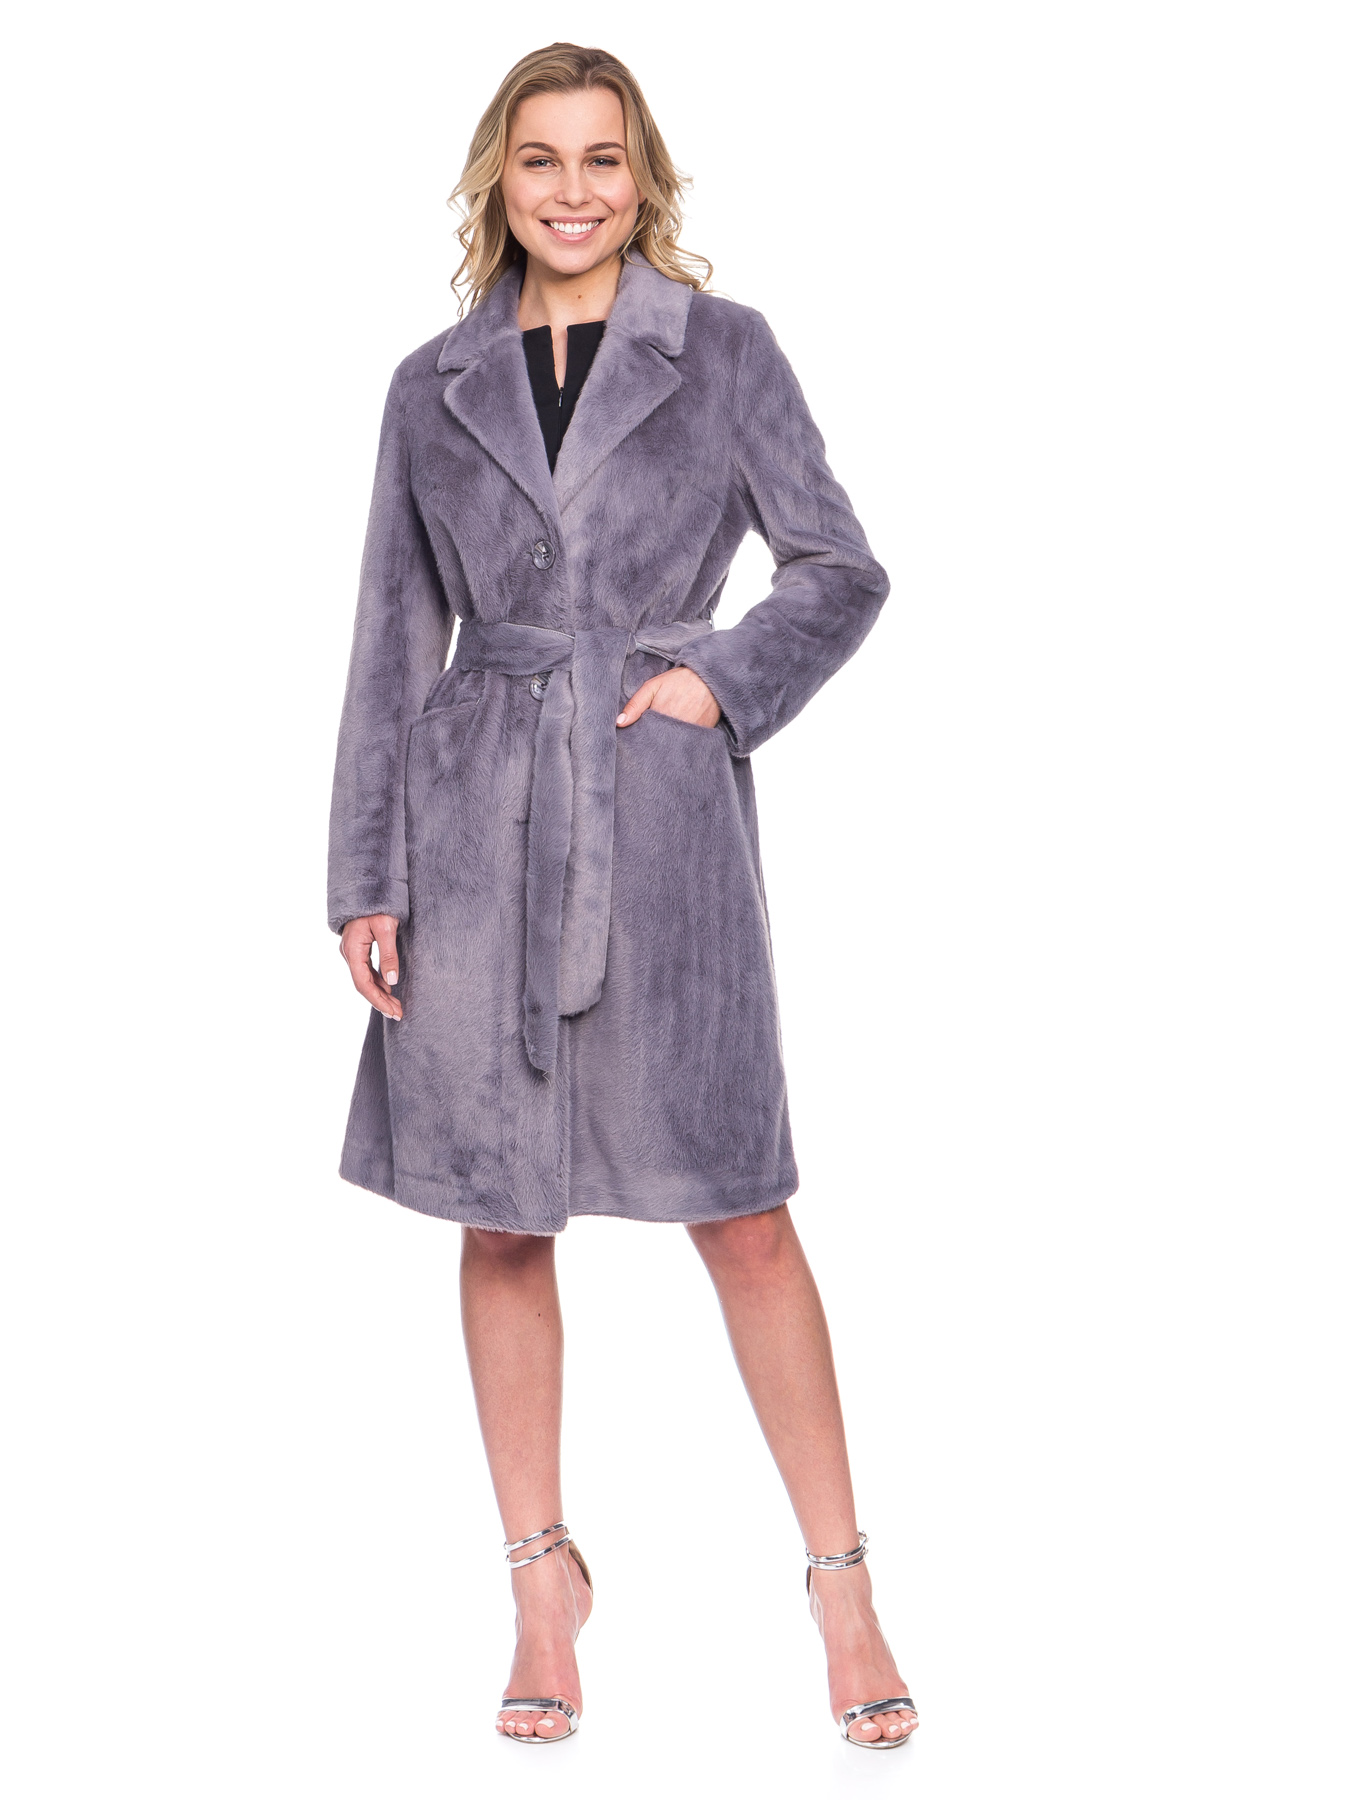 Женское демисезонное пальто из эко-меха с поясом